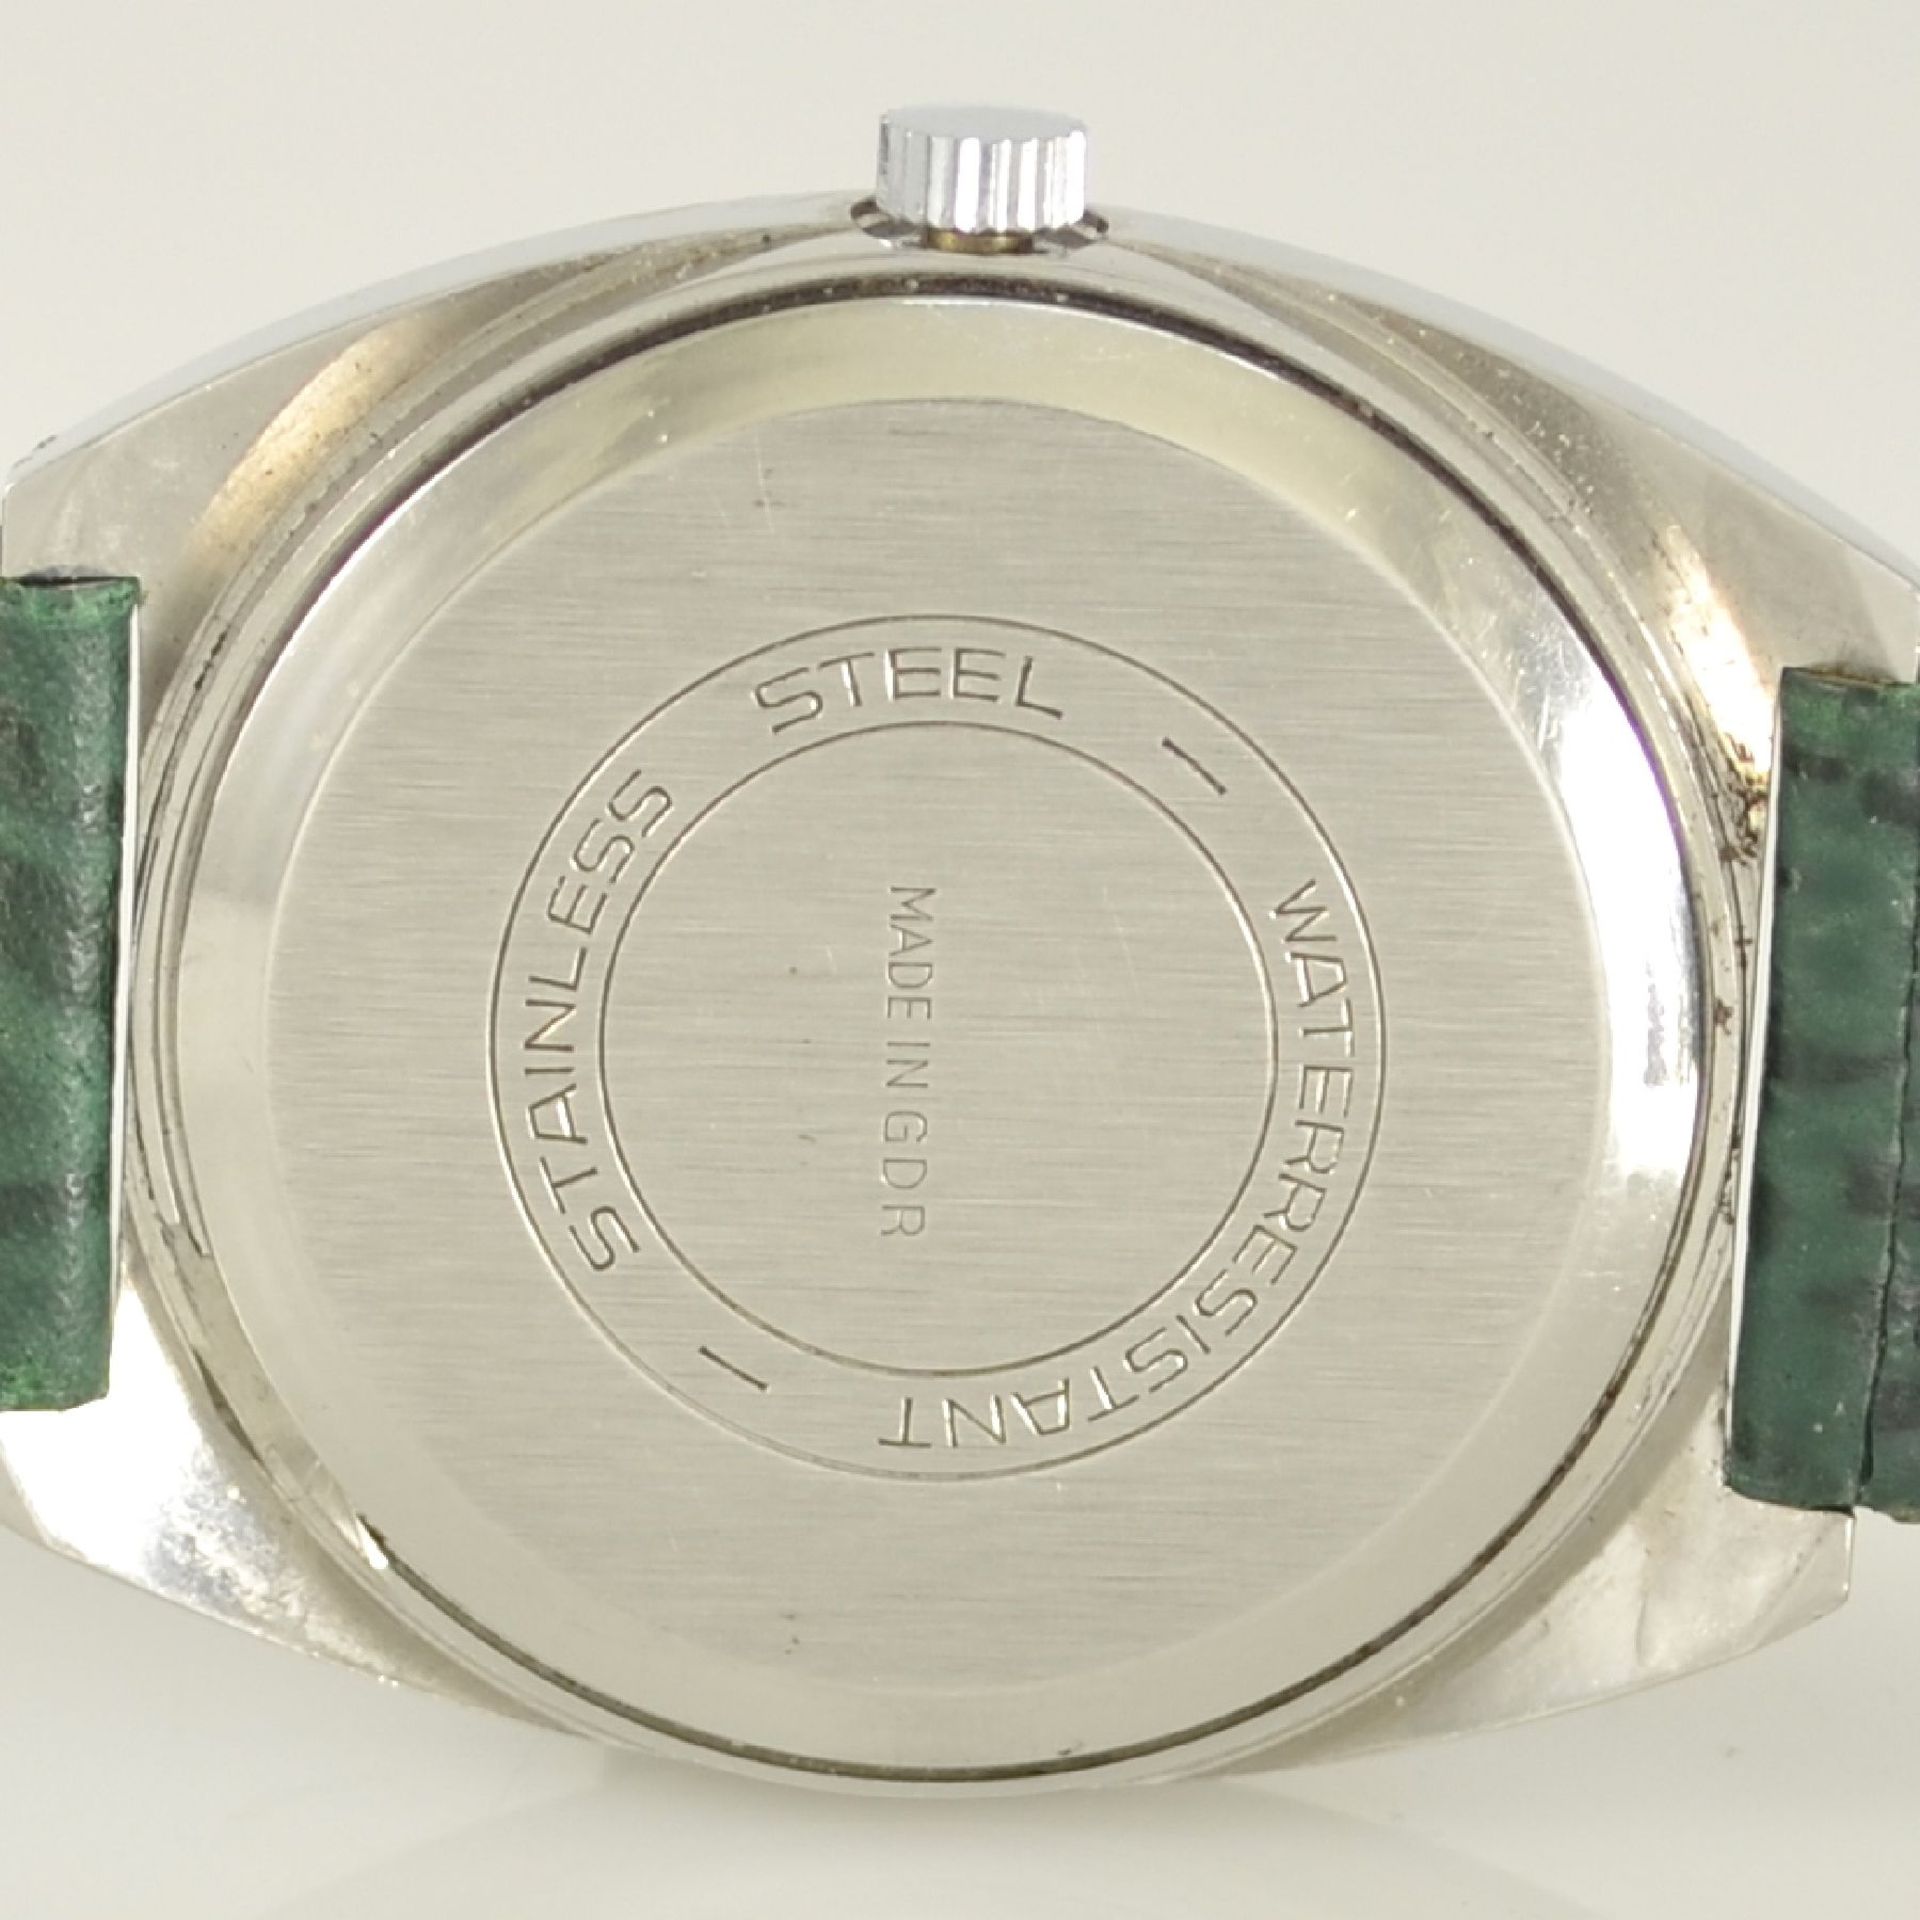 GLASHÜTTE Armbanduhr Spezimatic in Edelstahl, Automatik, DDR um 1970, Boden aufgedr., ausgef. grünes - Bild 5 aus 6